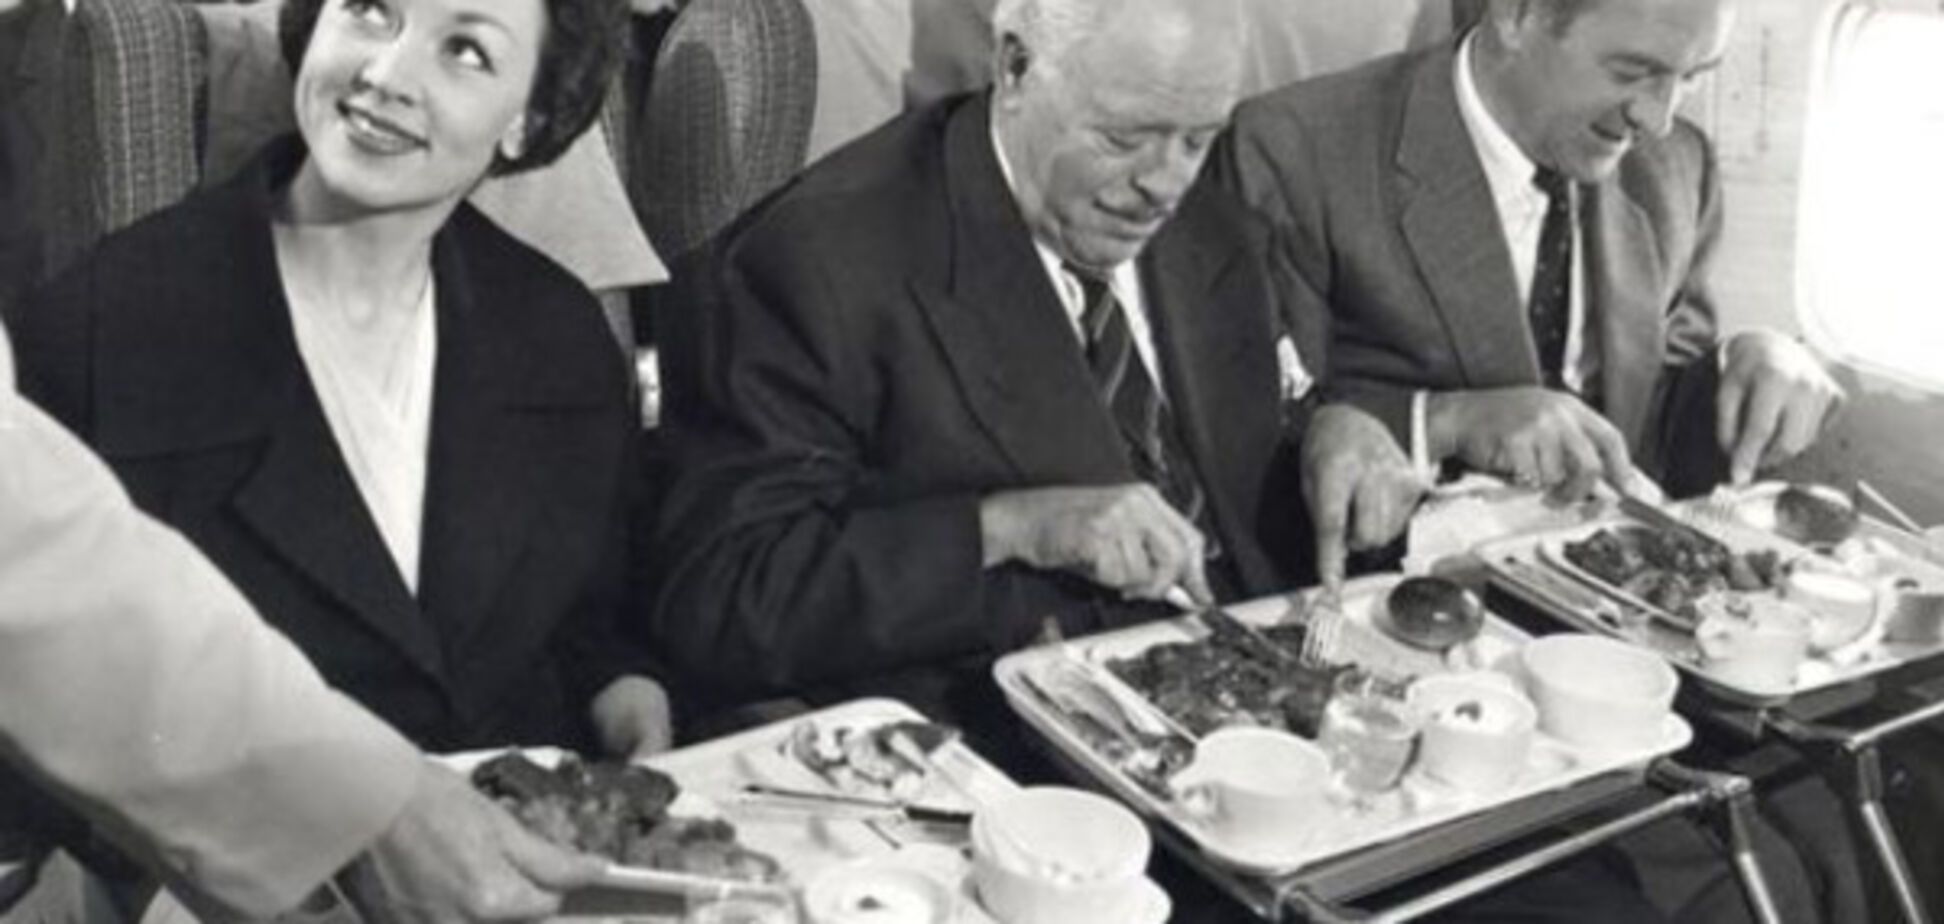 Еда в самолетах